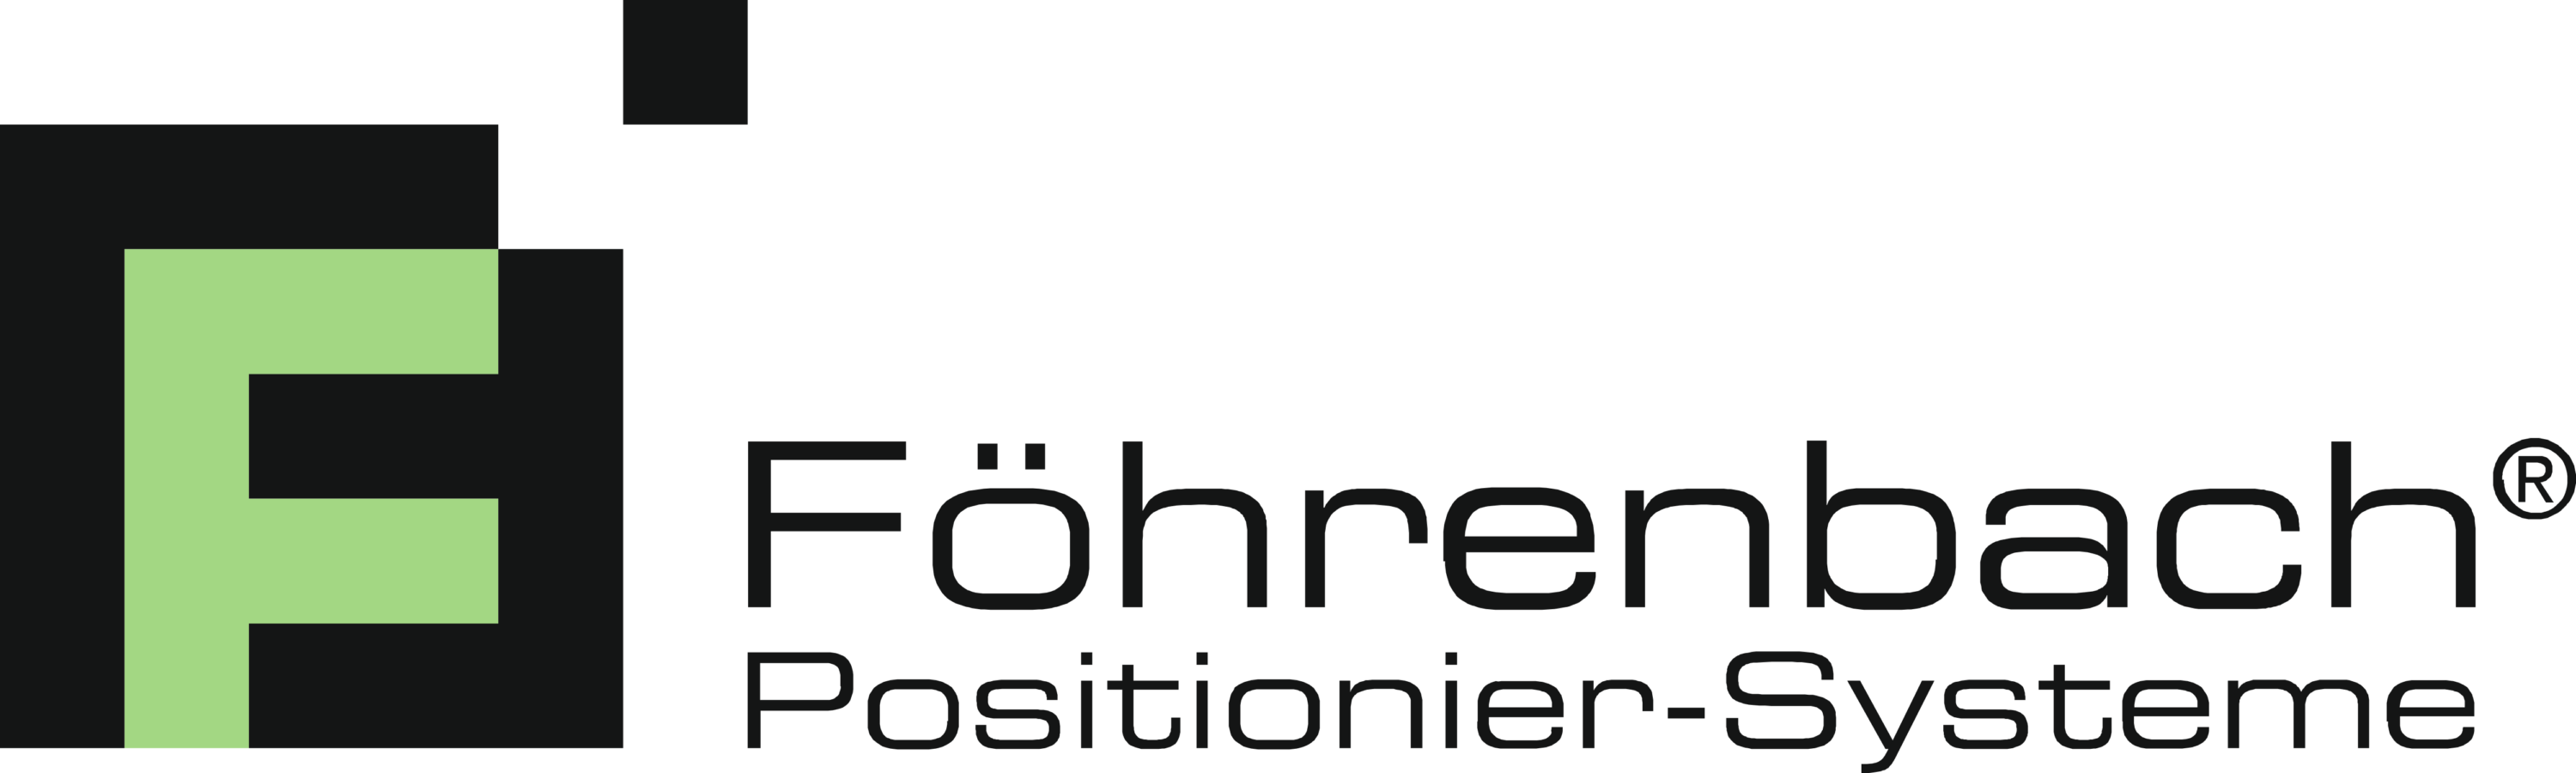 Fohrenbach Positionier Systeme Gmbh Logo